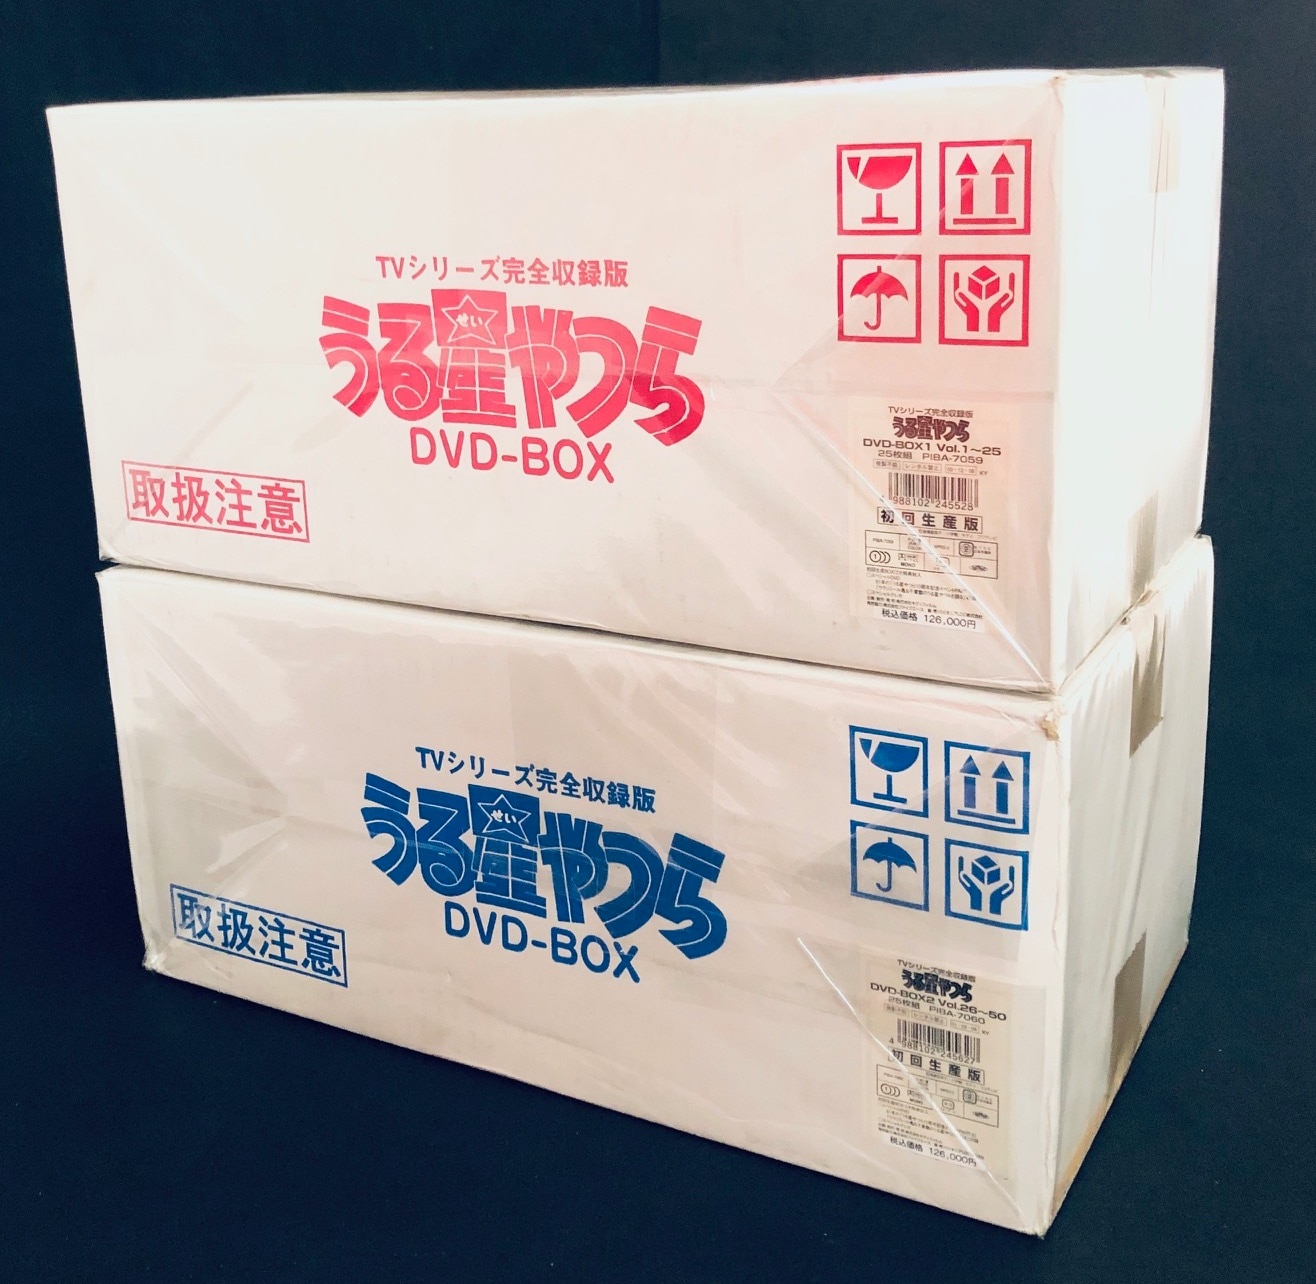 アニメDVD うる星やつら DVD-BOX TV完全収録版 2BOXセット